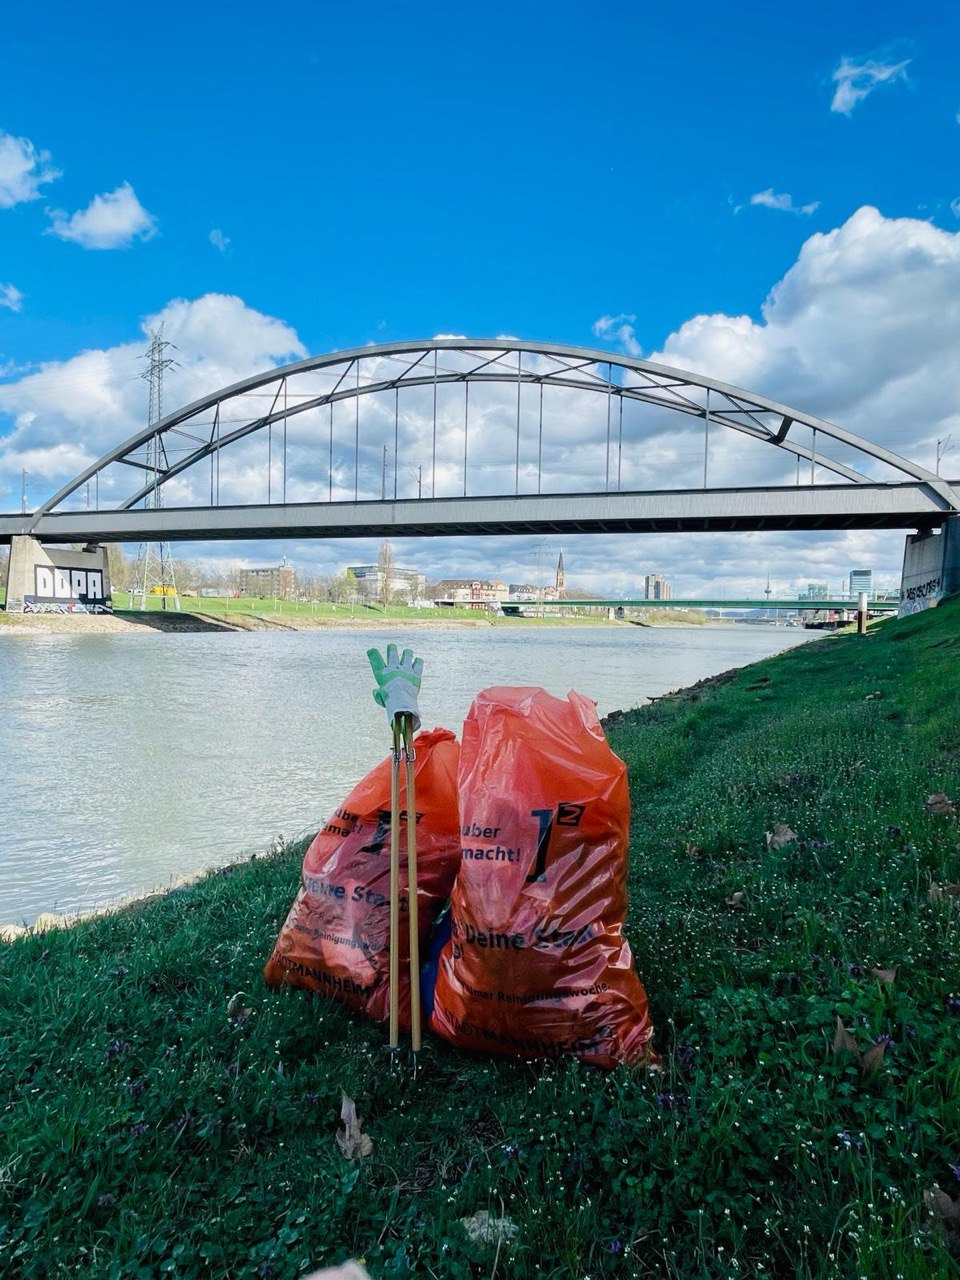 Man sieht die den Neckar und am Ufer zwei orangene Müllsäcke. Daneben stehen Müllpicker und Handschuhe. Im Hintergrund sieht man eine Brücke.